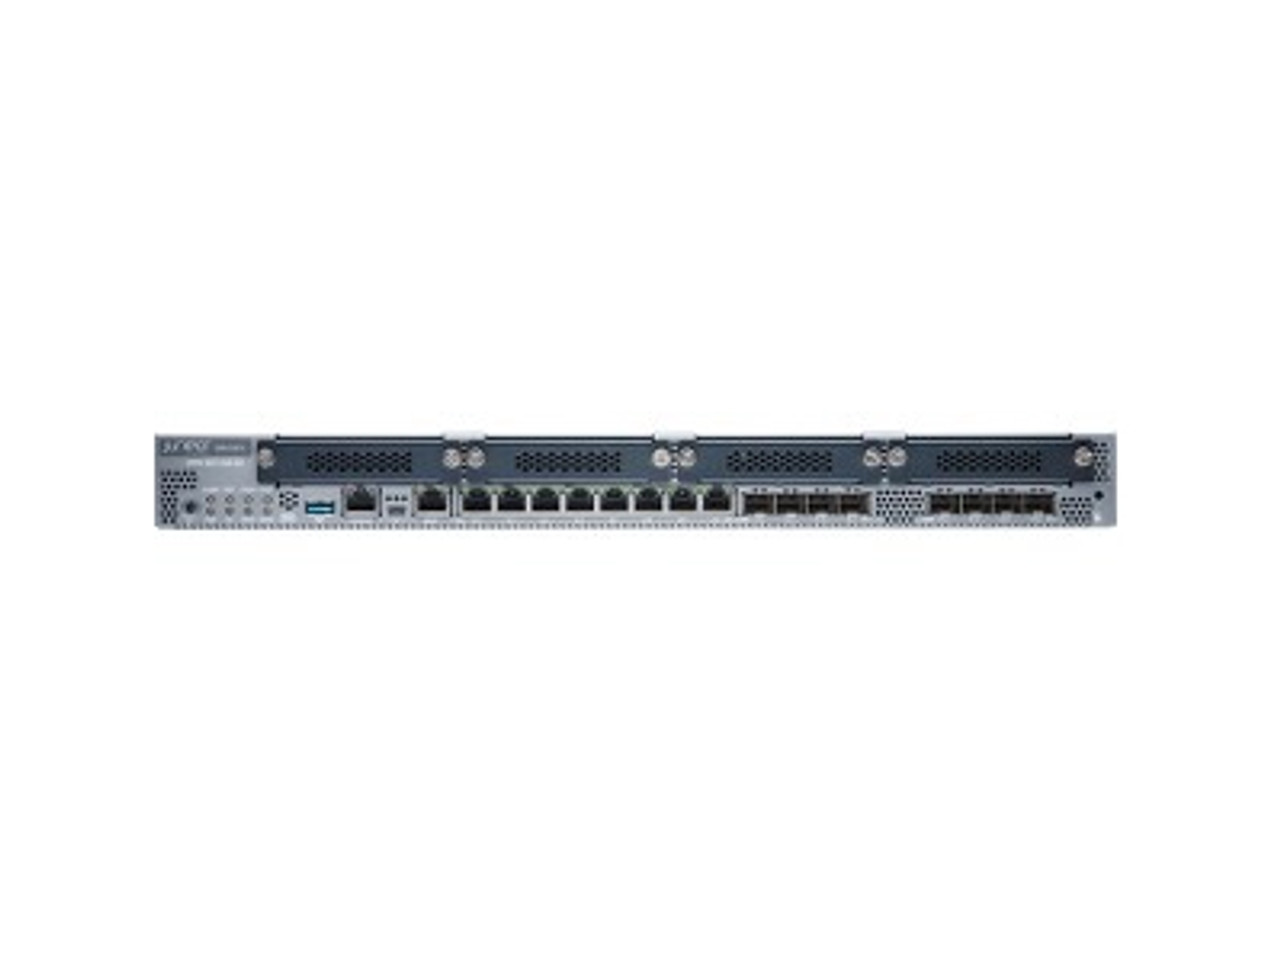 Juniper SRX345 Router - 8 Ports - Management Port - 12 - Gigabit Ethernet - 1U - Rack-mountable - 1 Year - Srx345-Jse